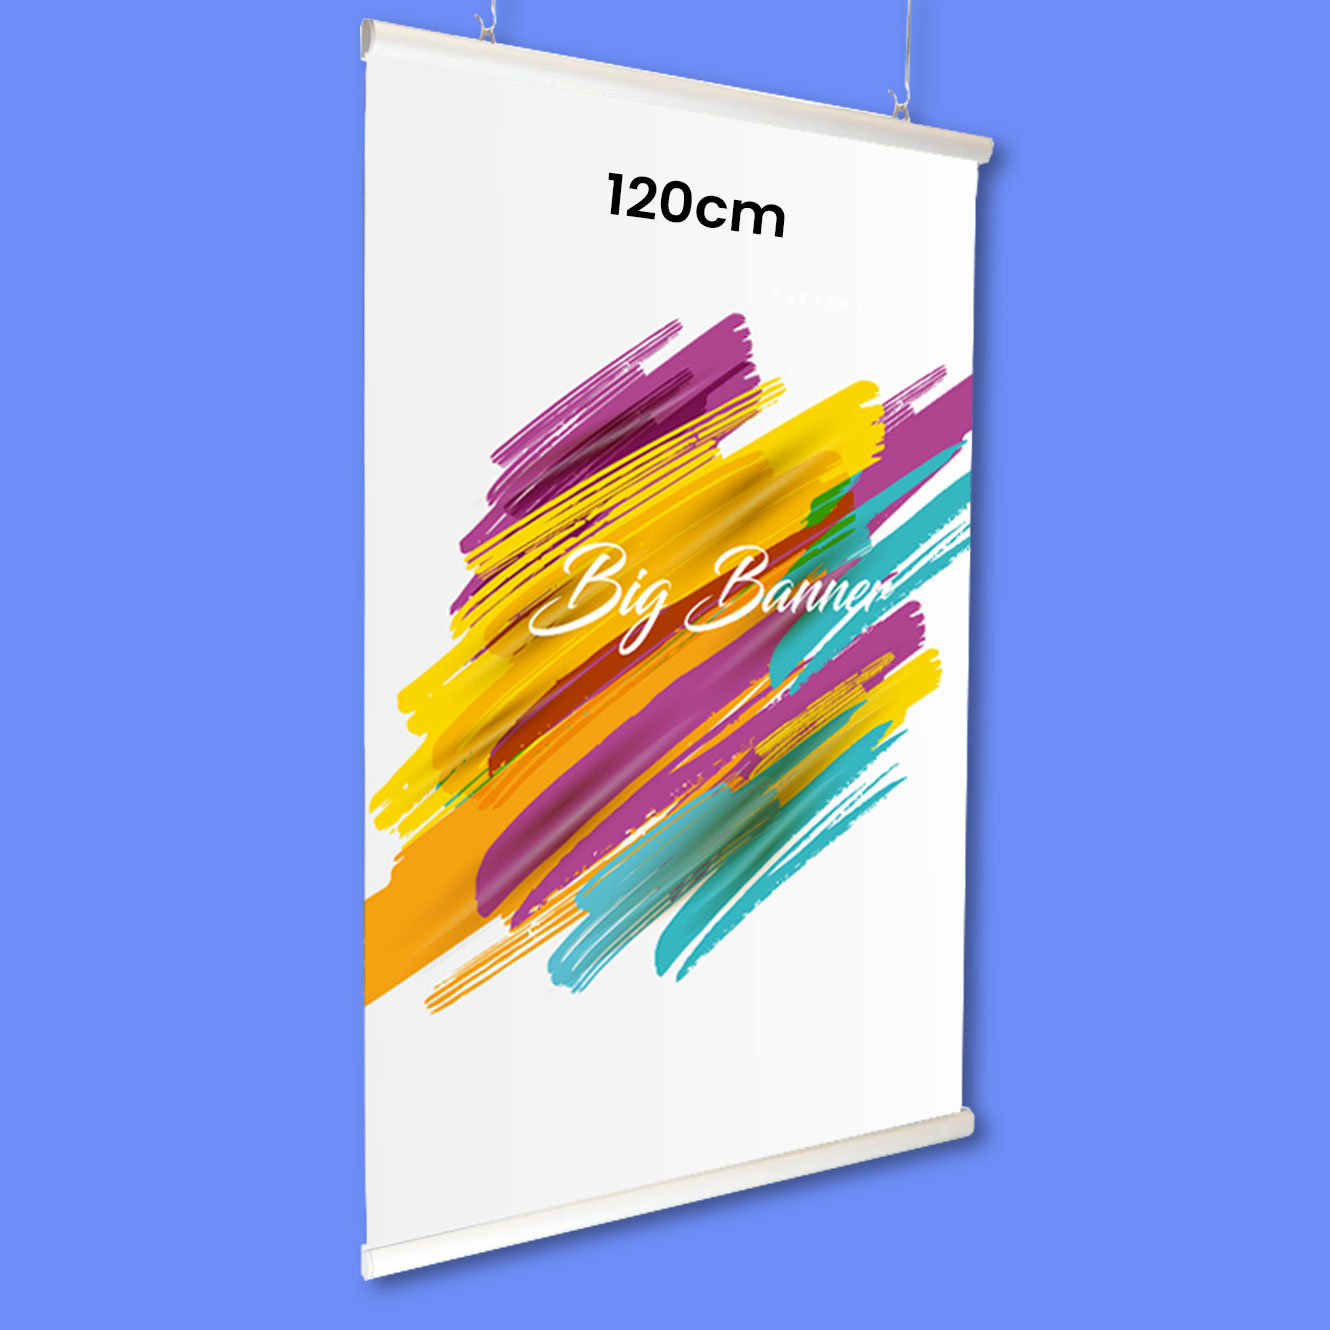 https://bigbanner.com.au/wp-content/uploads/2020/01/120cm-Lightweight-Aluminium-Poster-Hanger-2pcs-per-set-A0-1.jpg